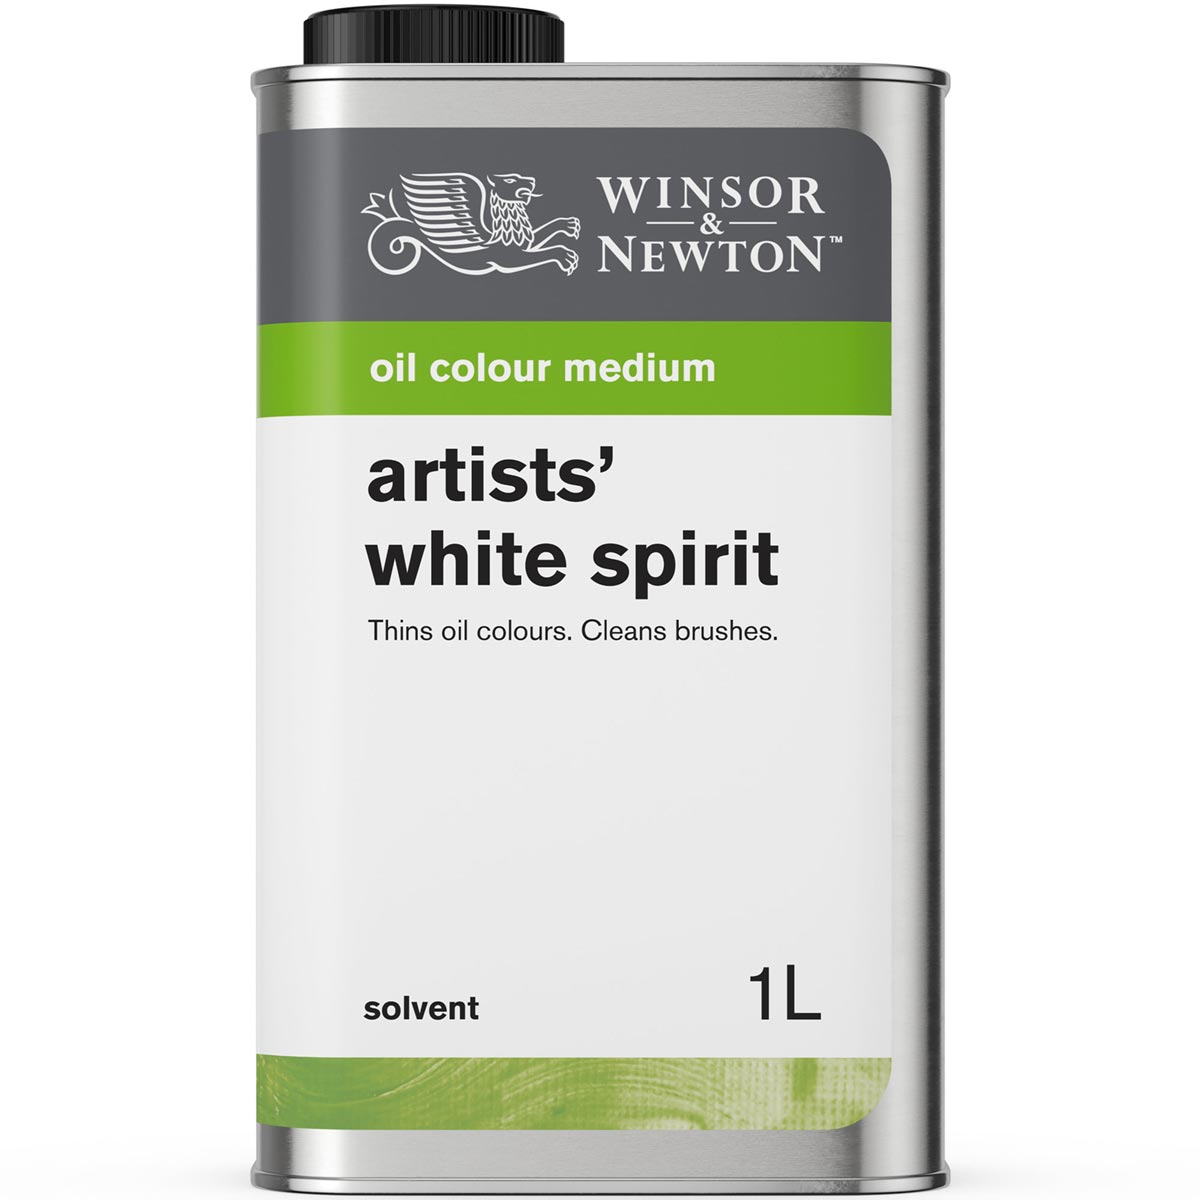 Winsor und Newton - Weißer Geist der Künstler - 1 Liter